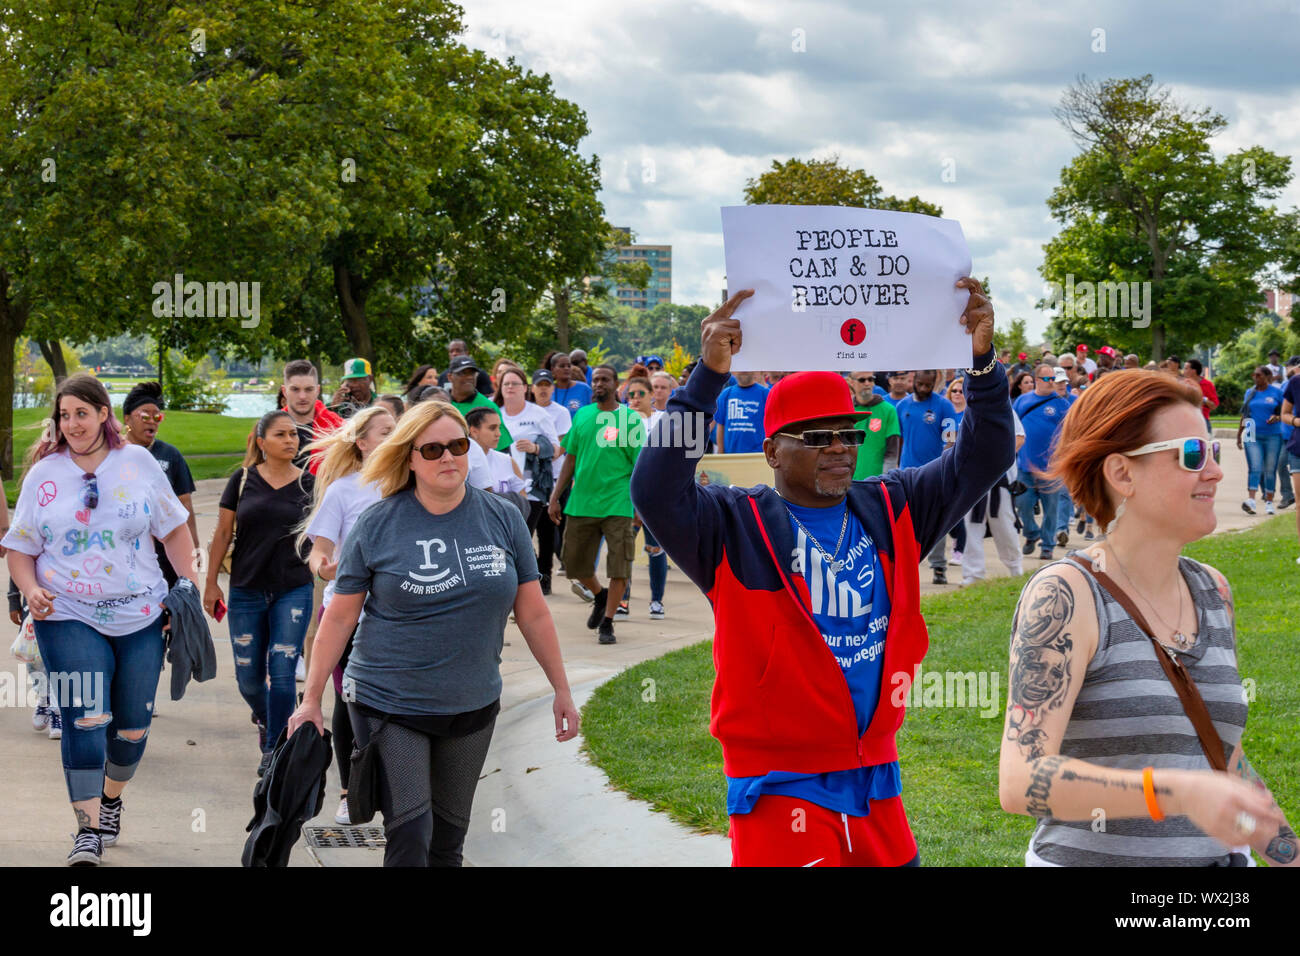 Detroit, Michigan - Il Michigan celebrare il recupero a piedi e Rally, celebrando la gente recuperando da oppiaceo e altre tossicodipendenze. All'evento, Foto Stock